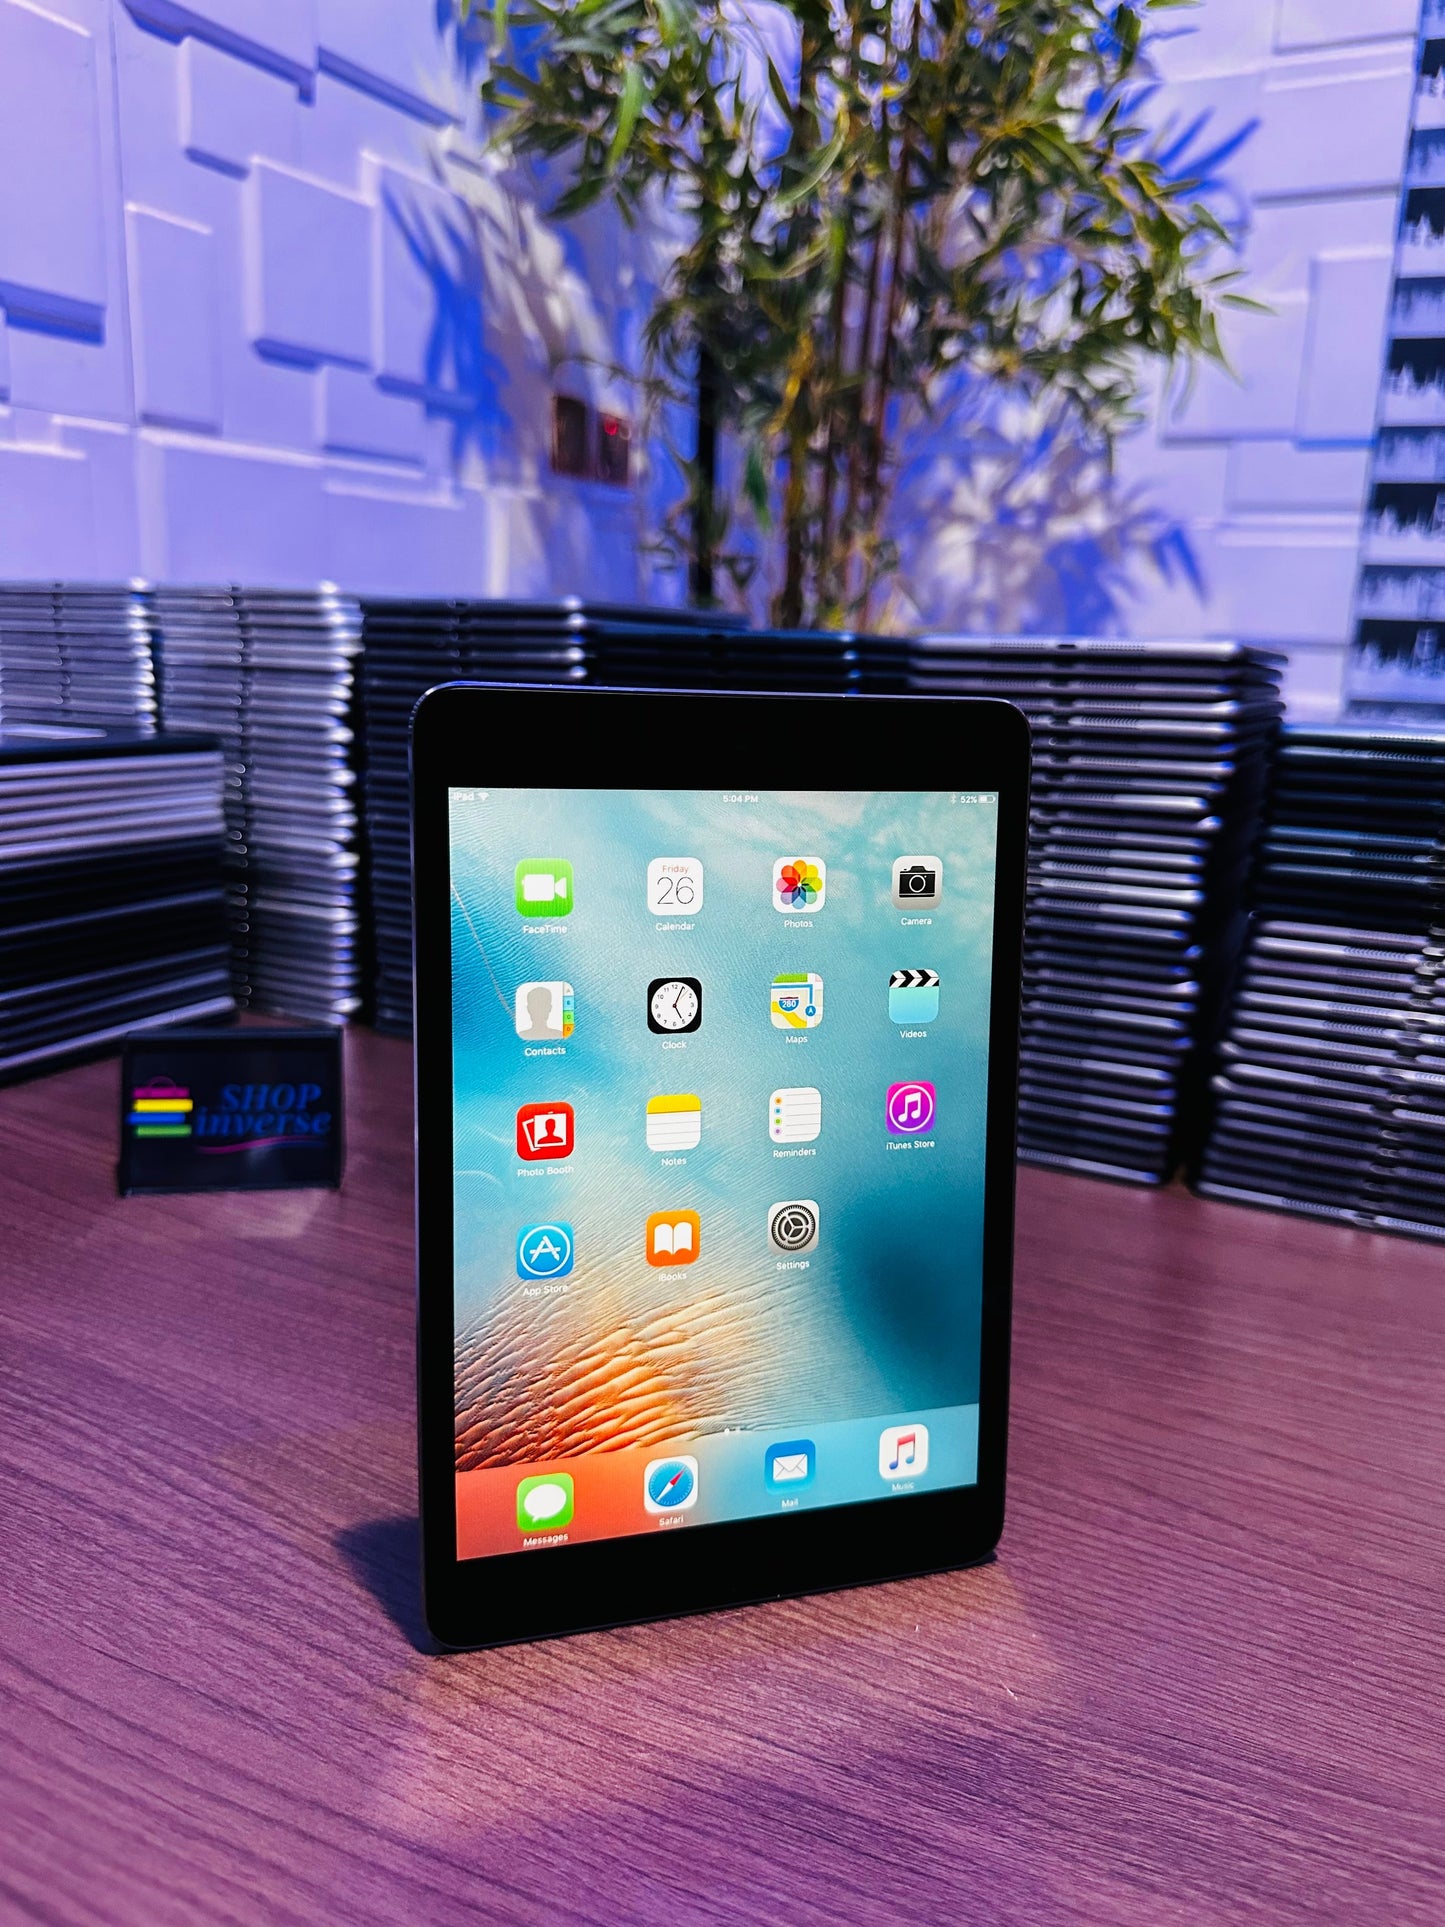 Apple iPad Mini 2 - 32GB - WiFi - Space Gray